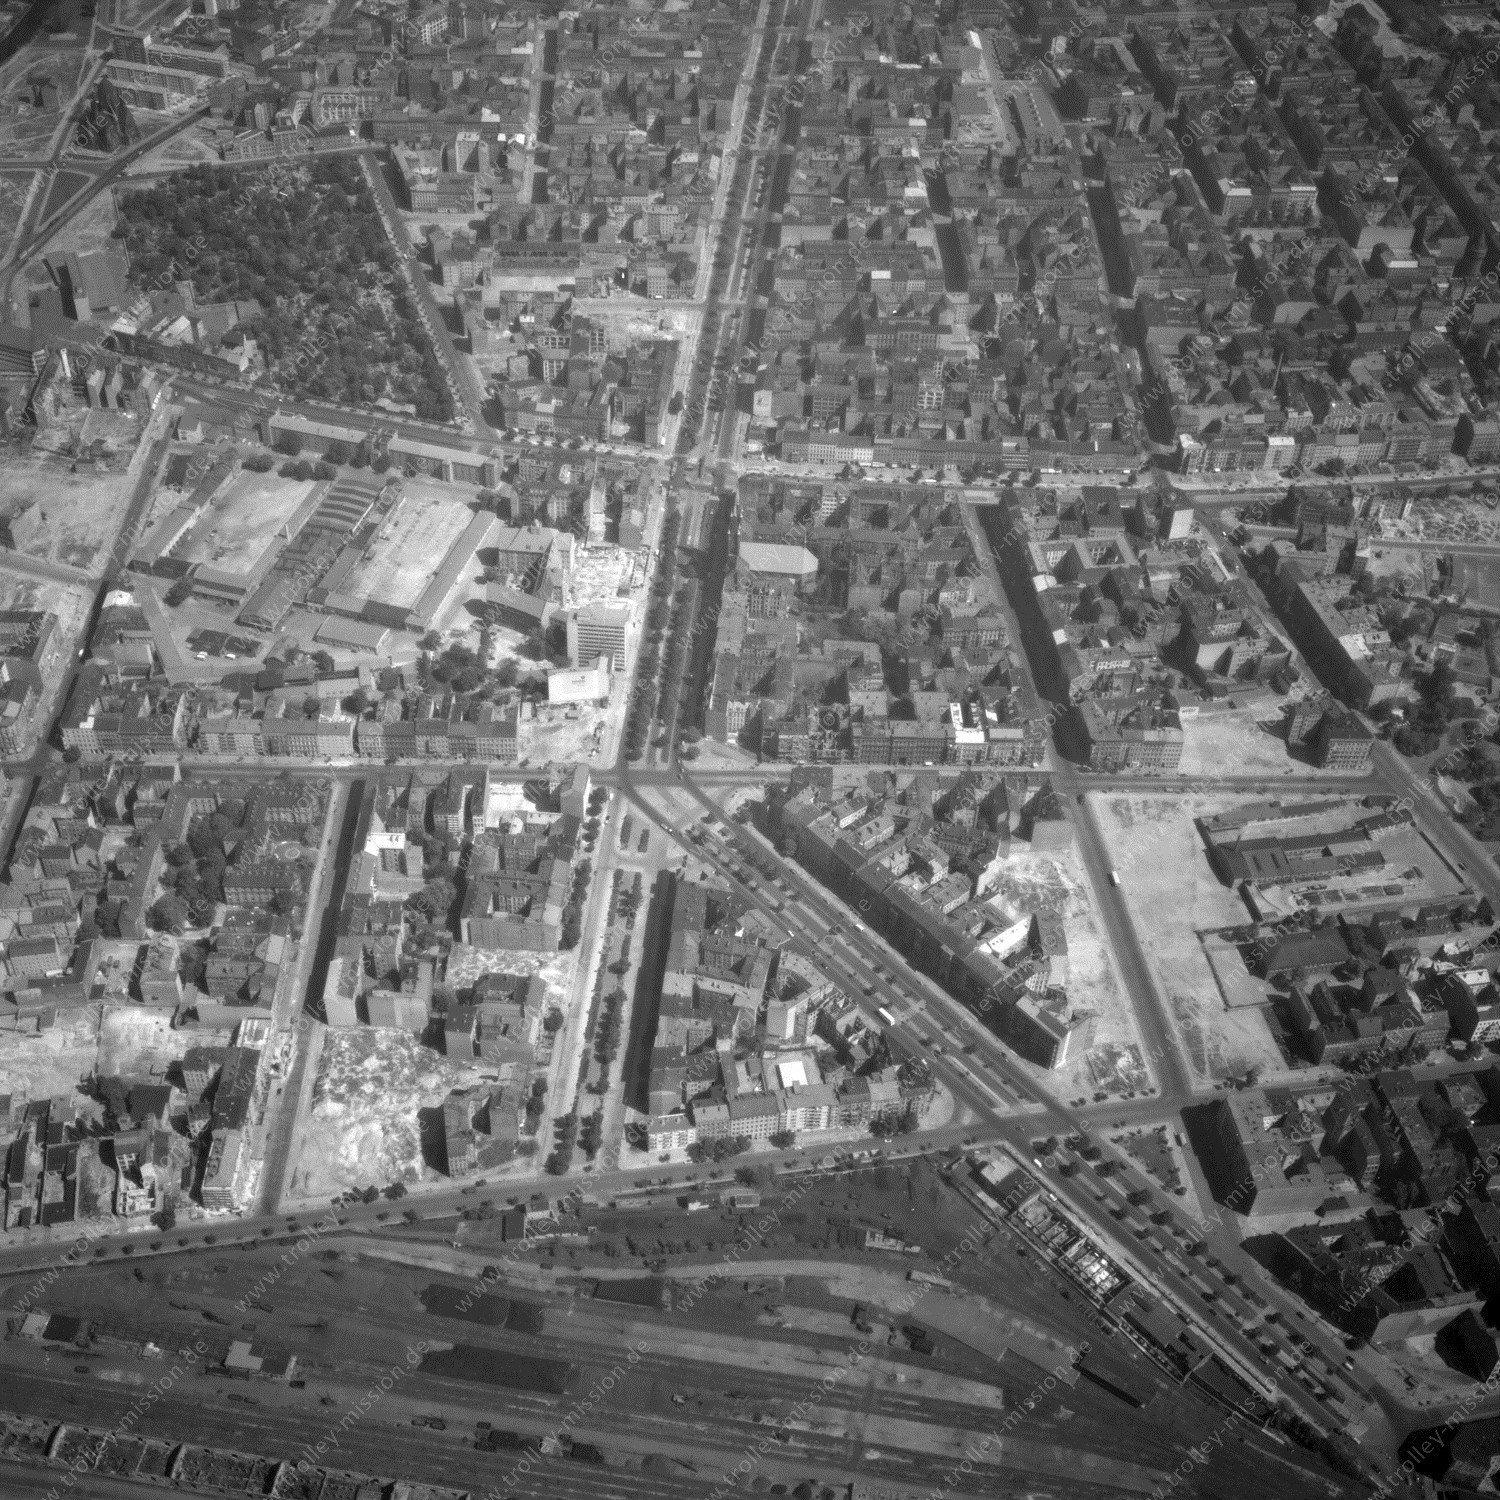 Alte Fotos und Luftbilder von Berlin - Luftbildaufnahme Nr. 04 - Historische Luftaufnahmen von West-Berlin aus dem Jahr 1954 - Flugstrecke India